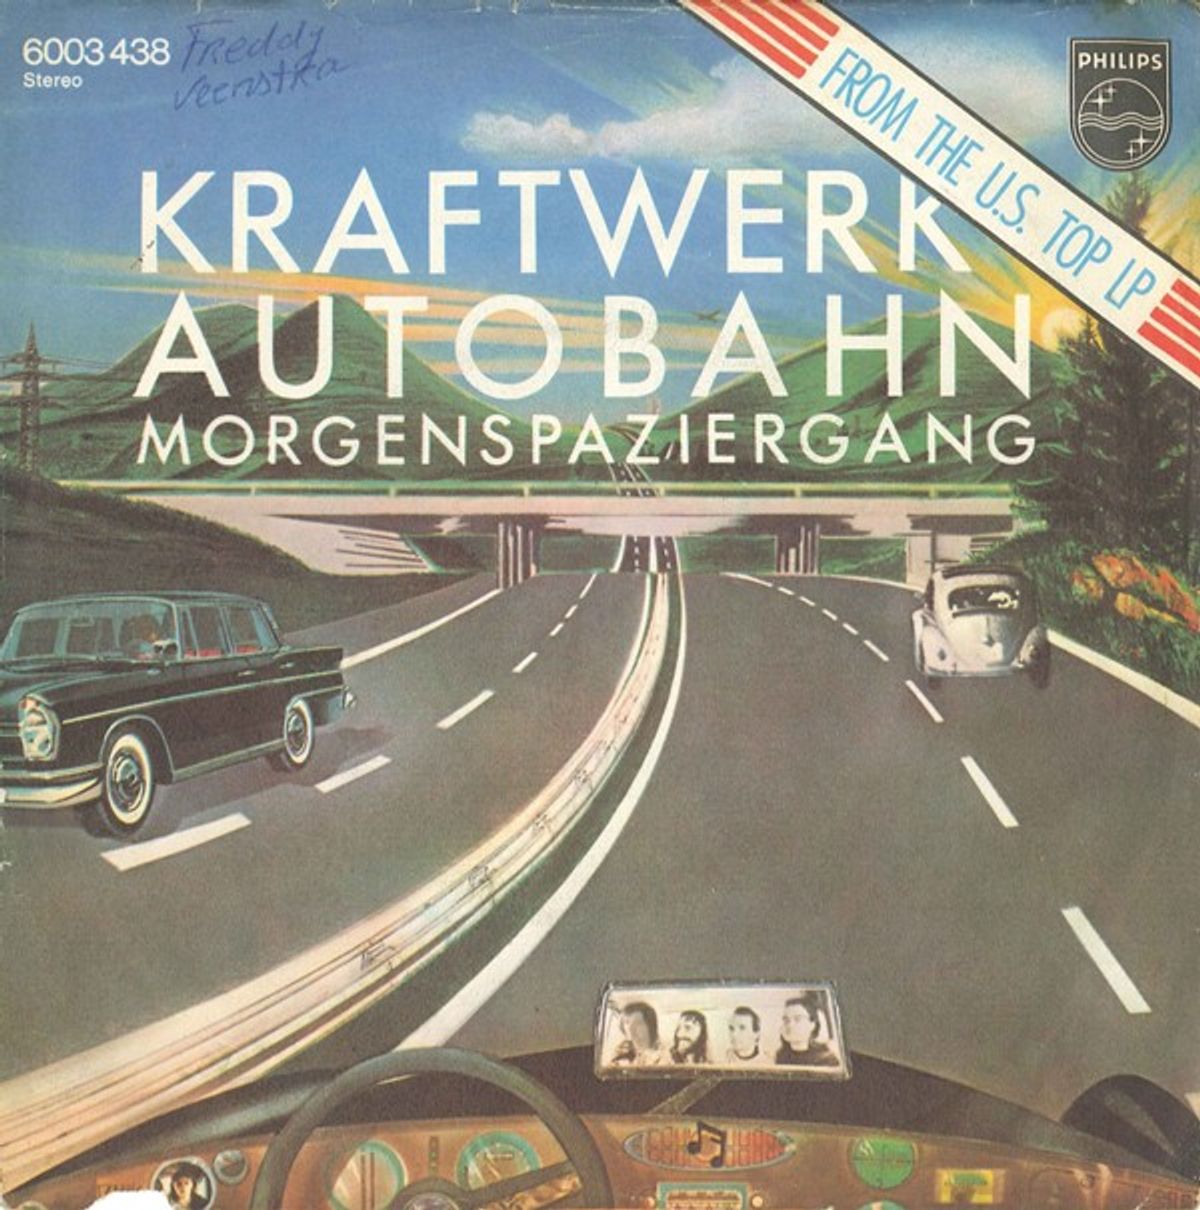 #Autobesognes - Kraftwerk - Autobahn (1974)